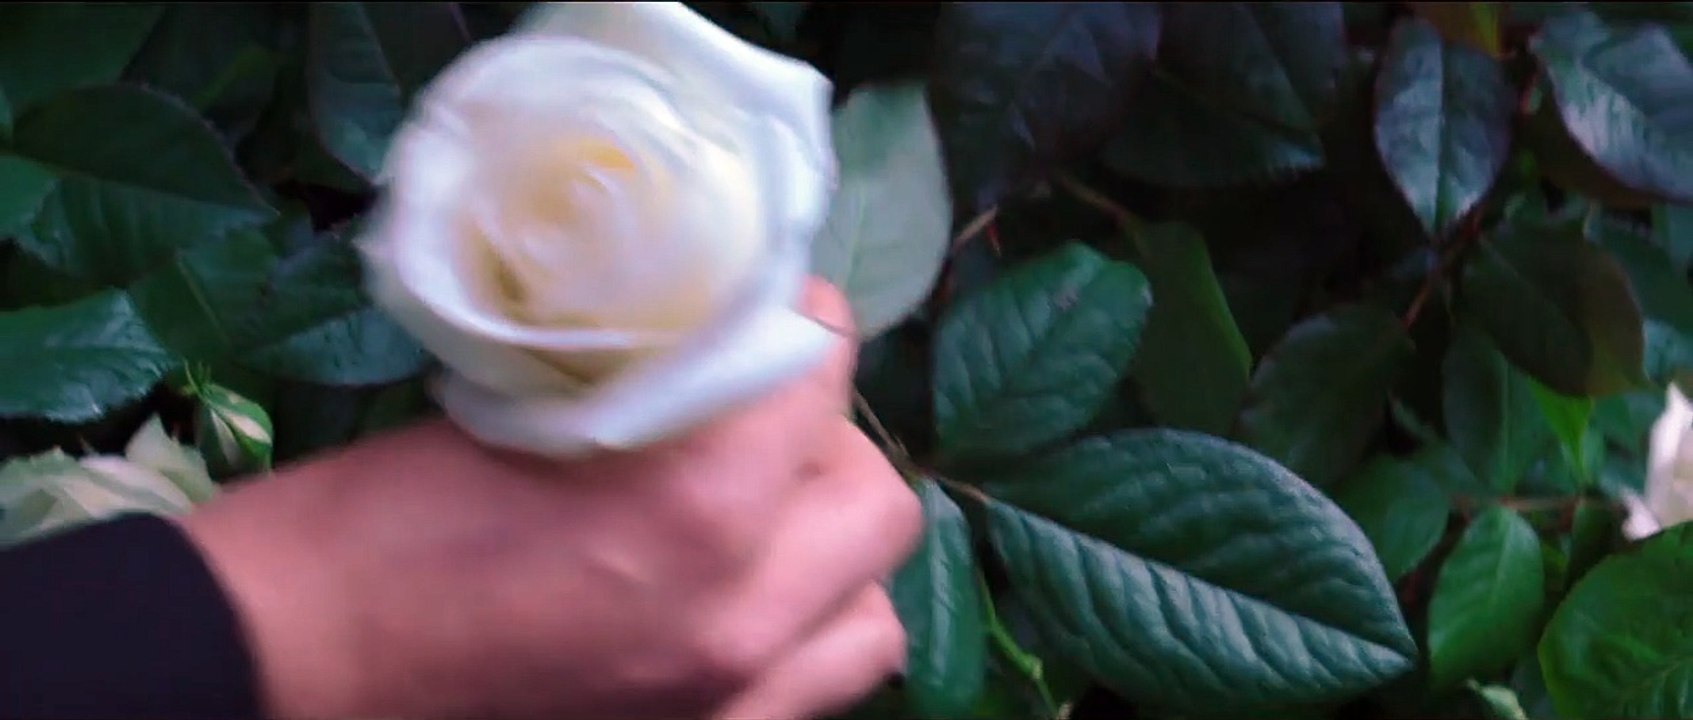 Die Tribute von Panem 4 - Mockingjay Teil 2 Trailer (2) DF